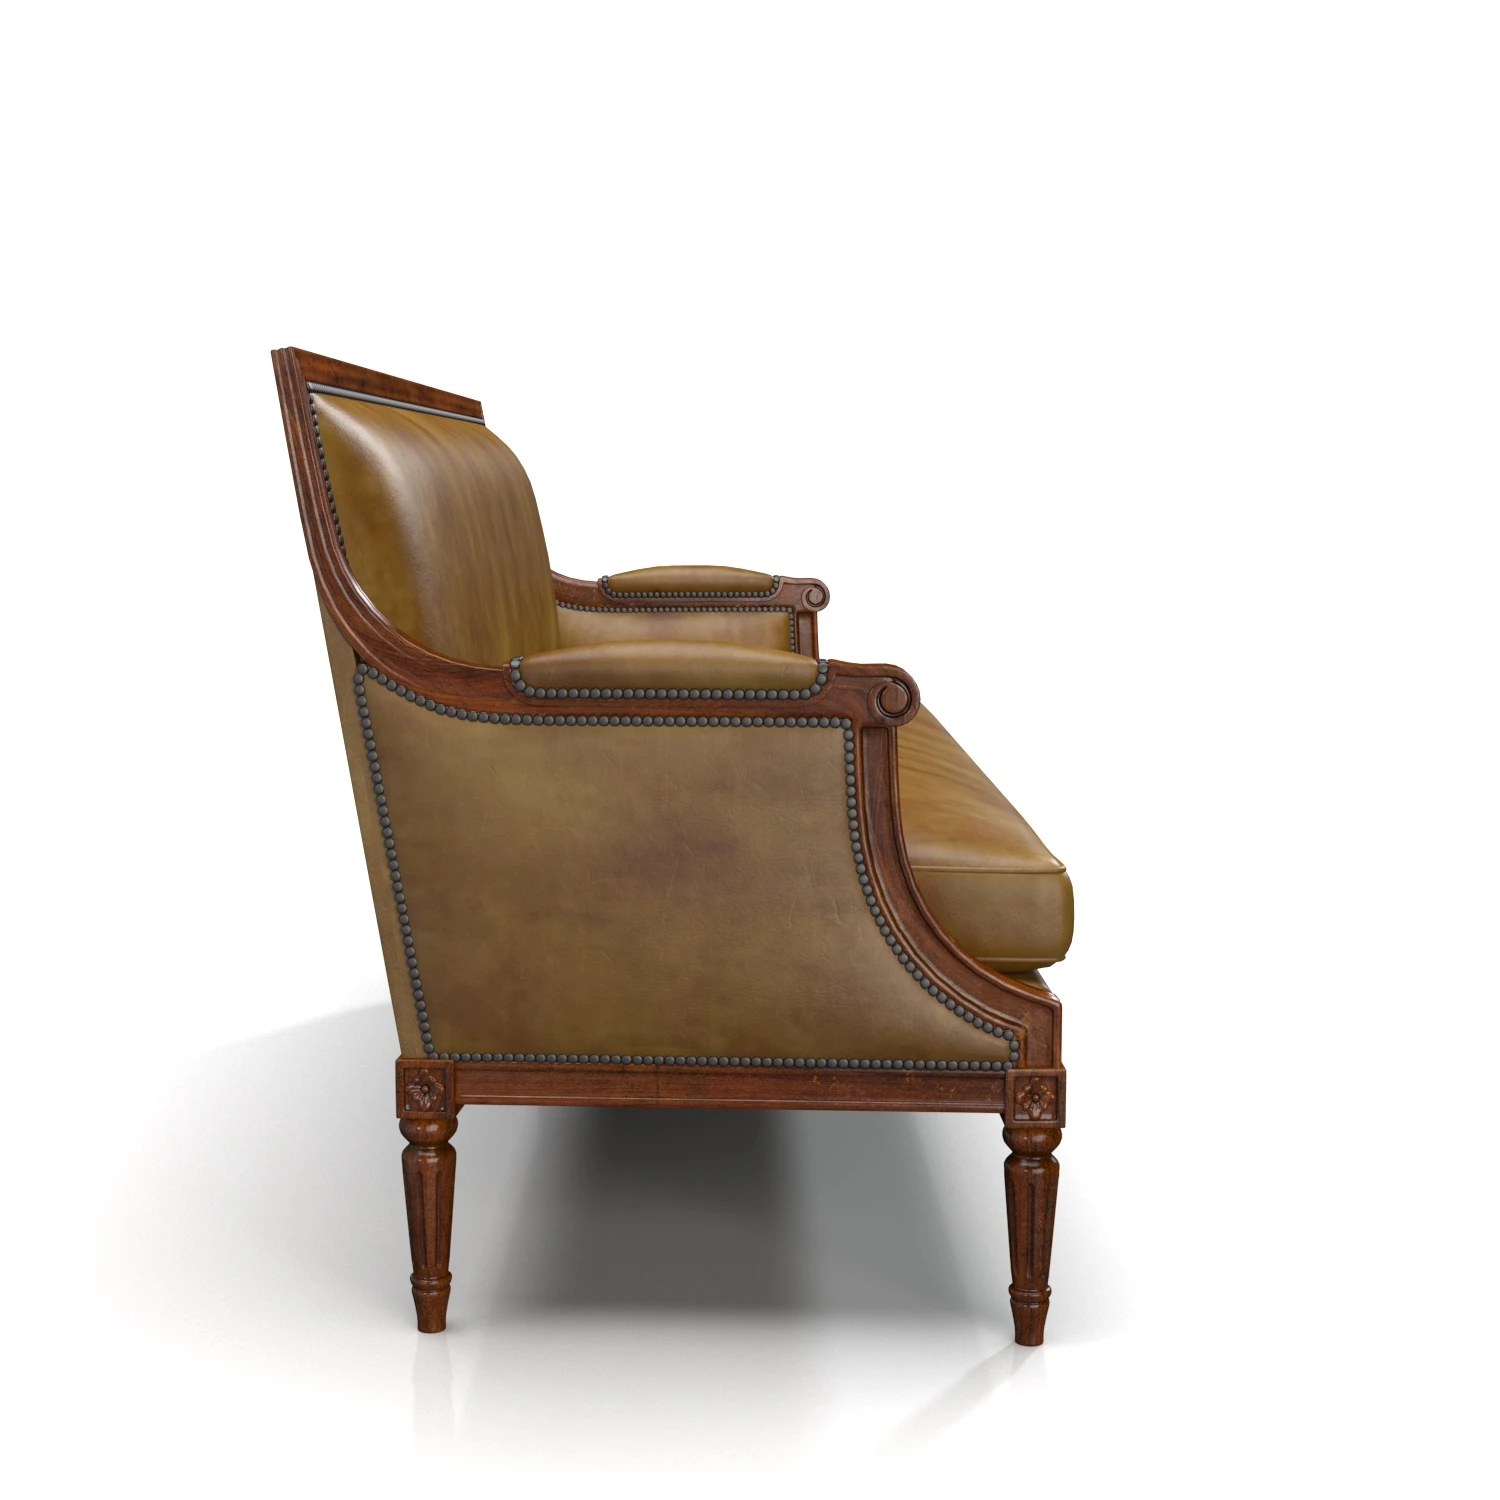 English Leather 19th Century Mahogany Sofa 3D Model_03